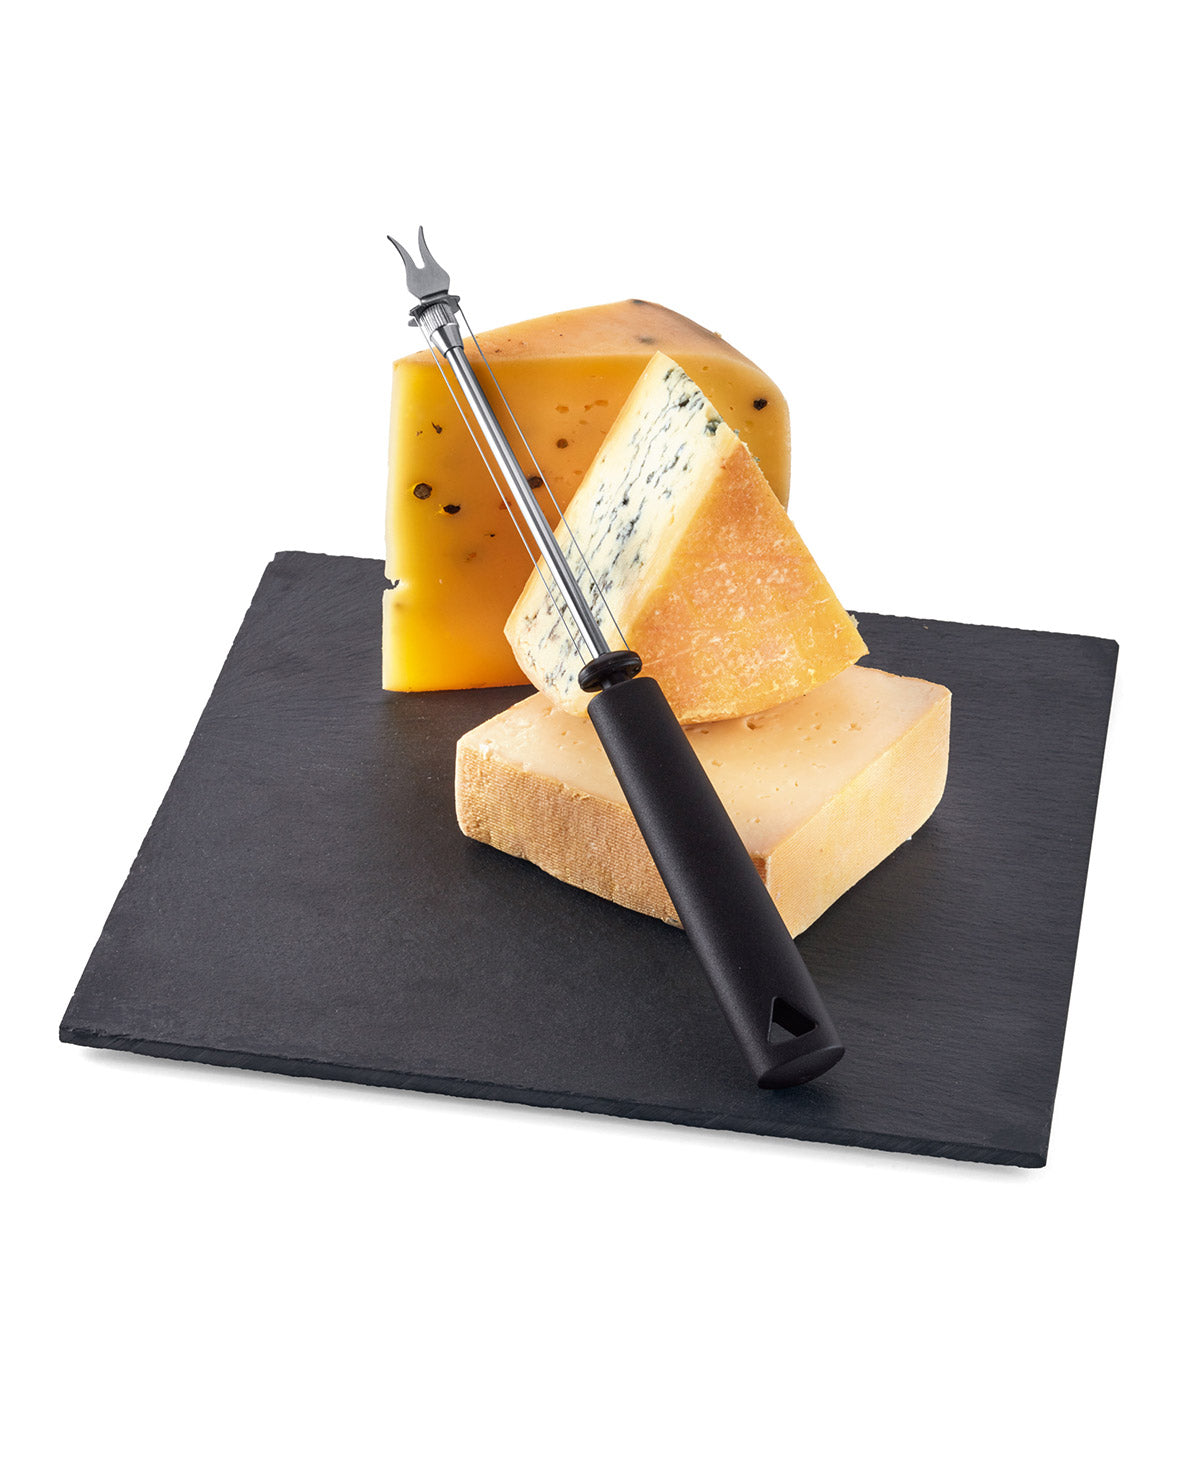 Cheese knife/ slicer 14cm-7211514